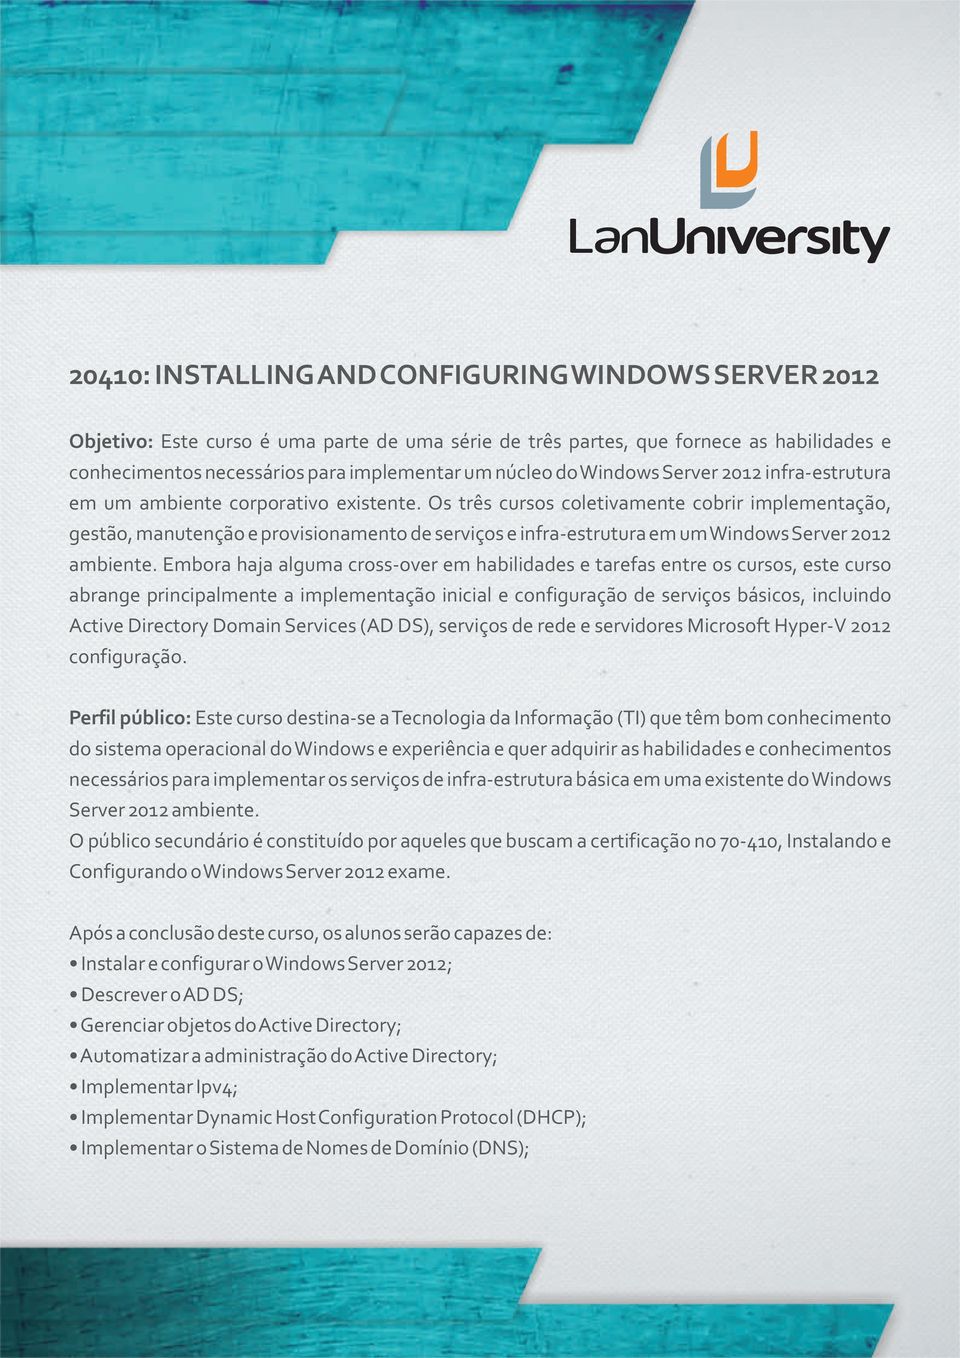 Os três cursos coletivamente cobrir implementação, gestão, manutenção e provisionamento de serviços e infra-estrutura em um Windows Server 2012 ambiente.